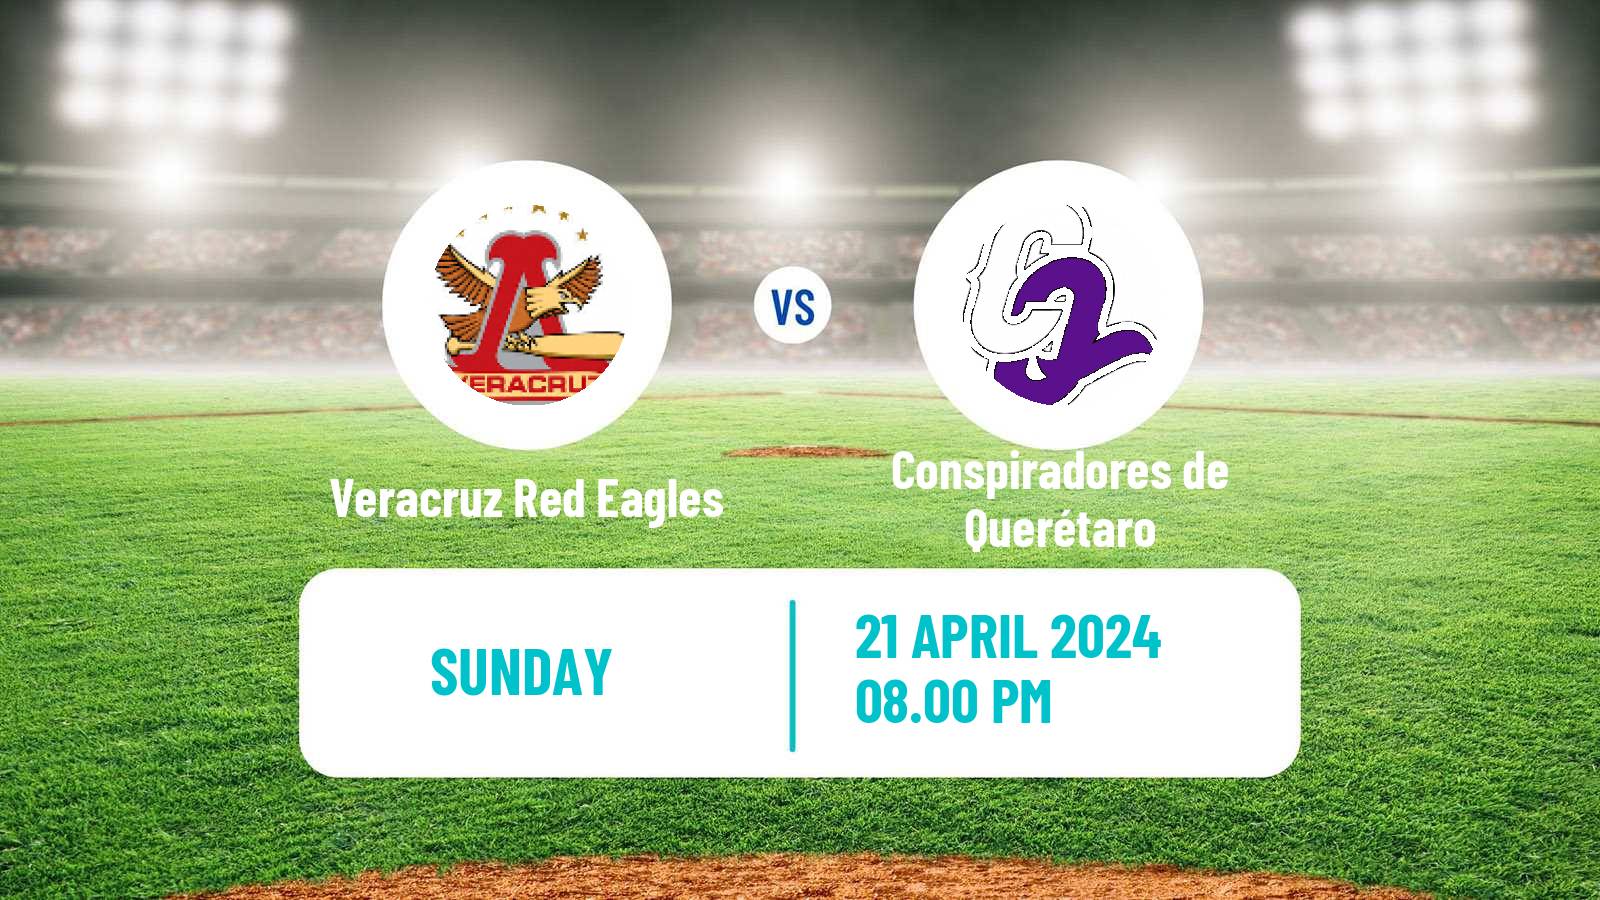 Baseball LMB Veracruz Red Eagles - Conspiradores de Querétaro